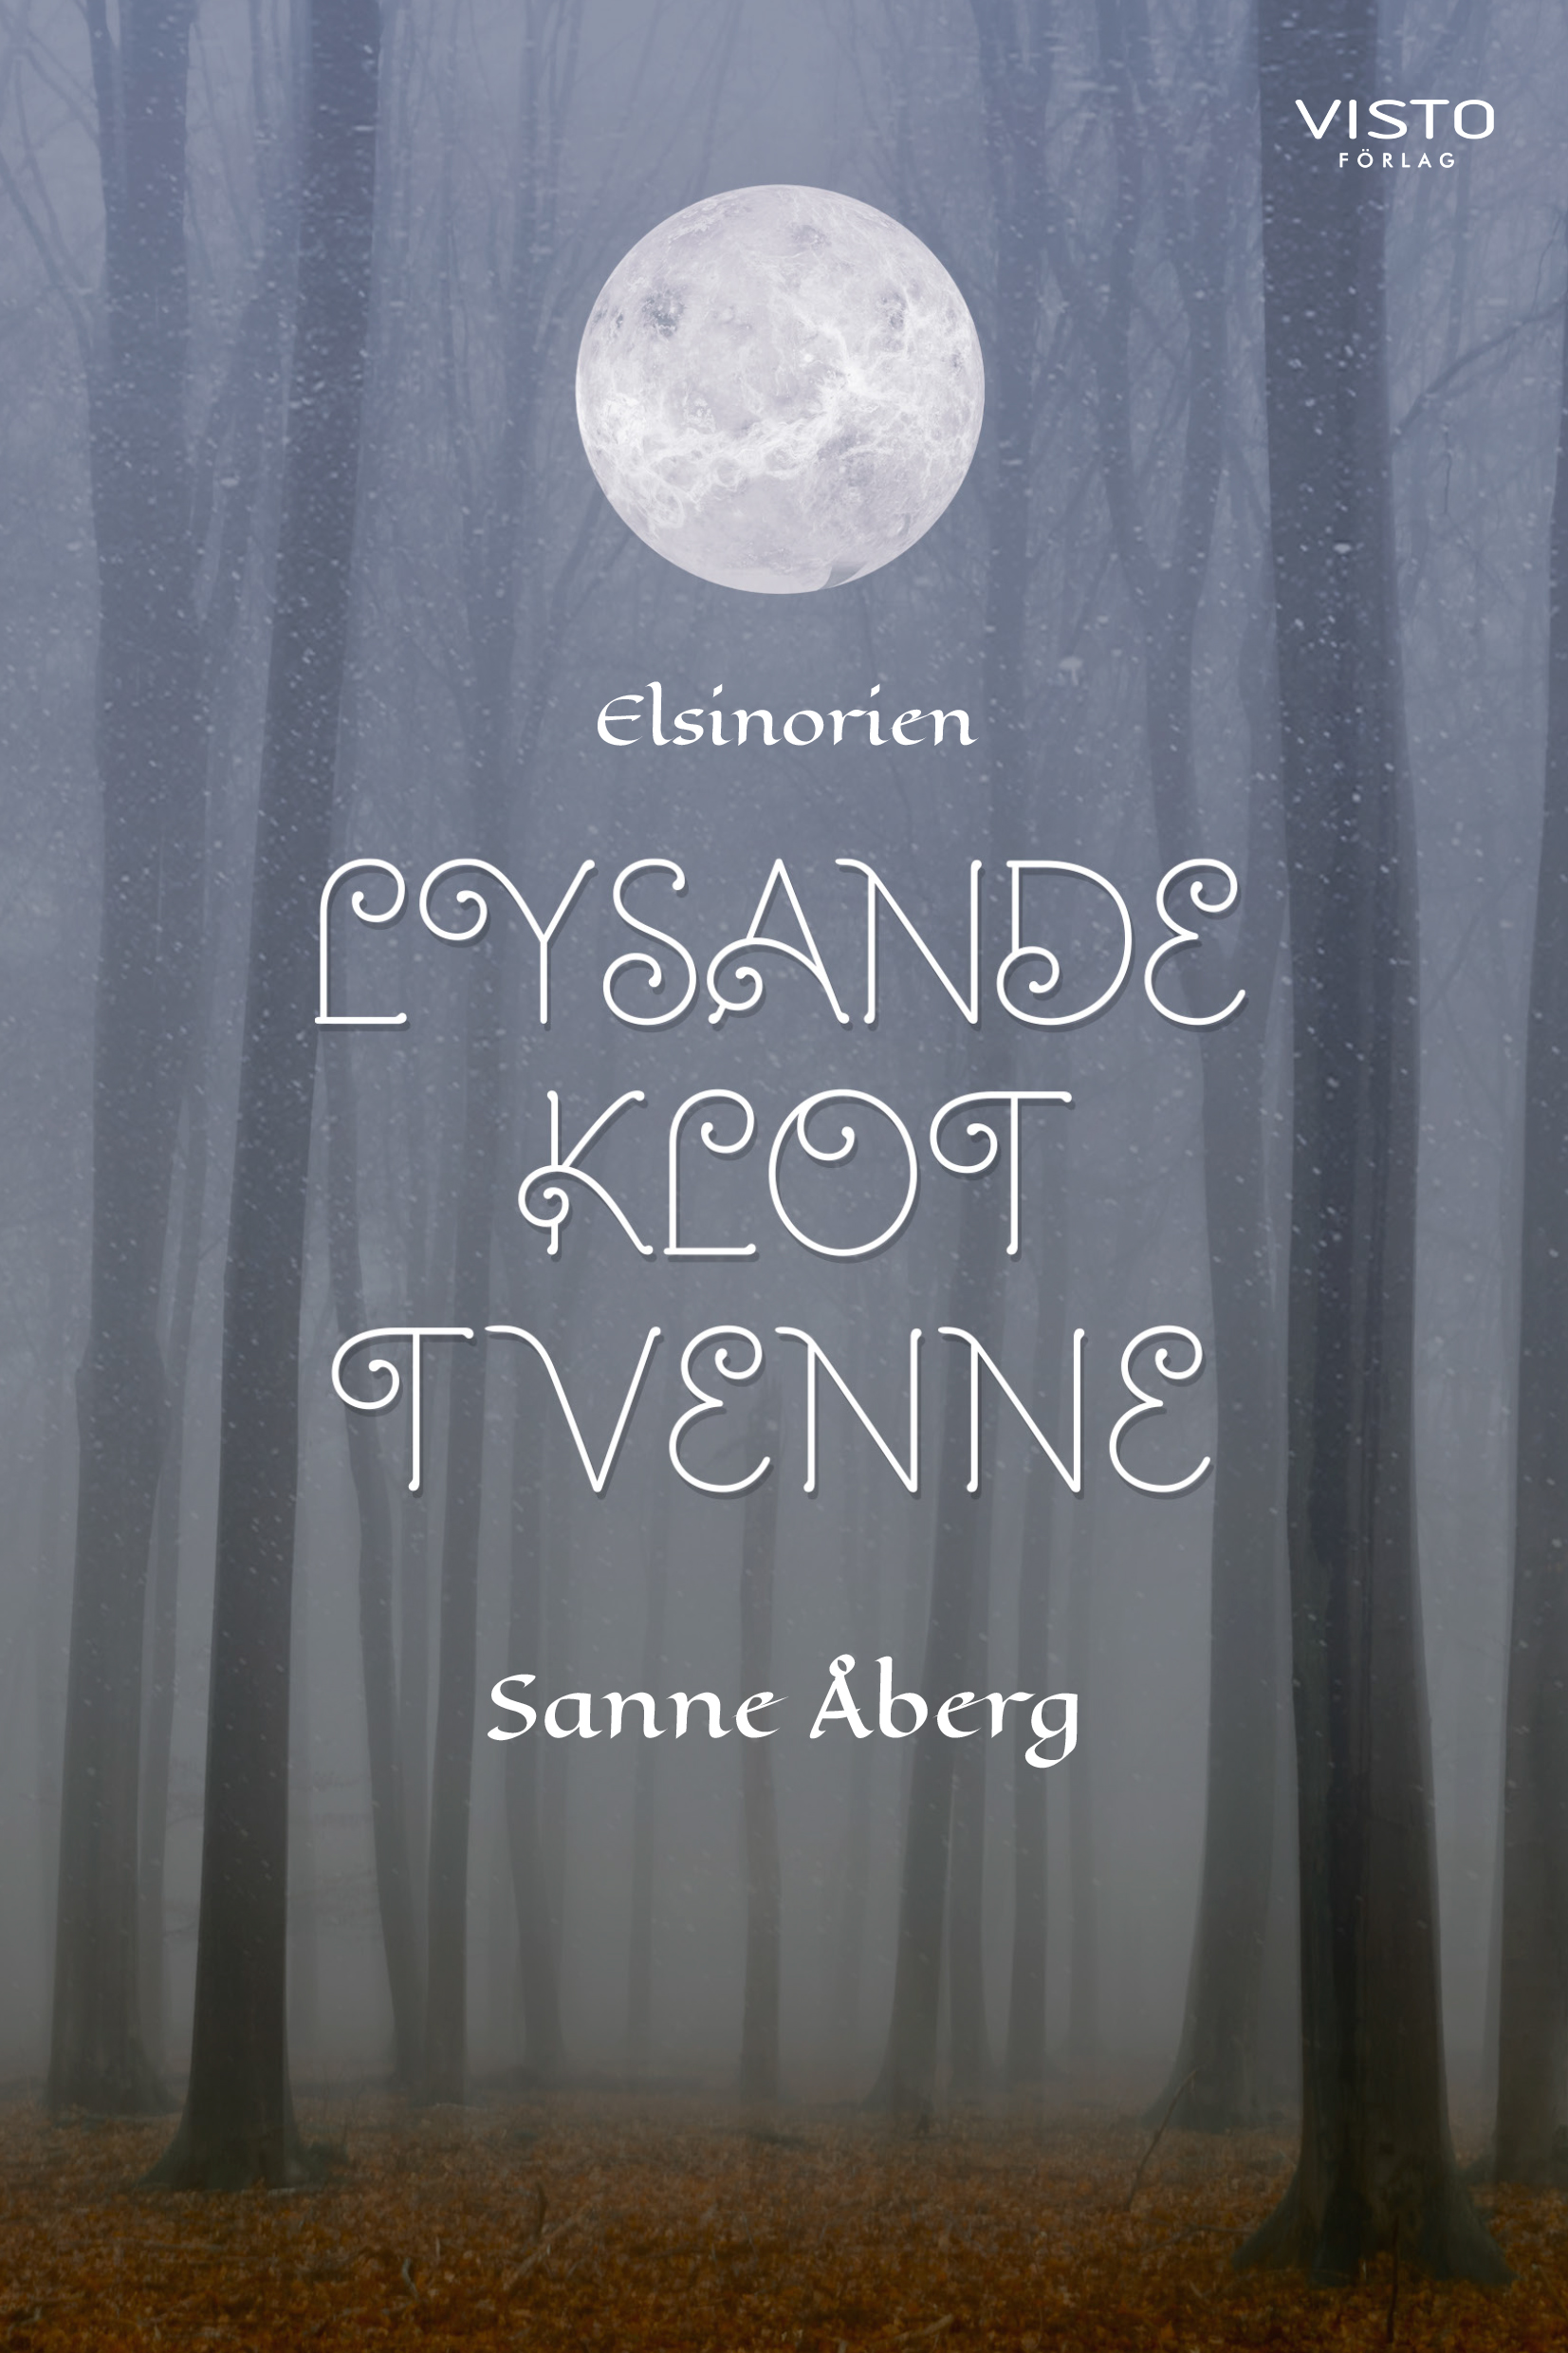 Bokframsida till boken "Lysande klot tvenne" av Sanne Åberg. Kala bokstammar, löv på marken, dimma. Ovanför titeln ett lysande klot. 